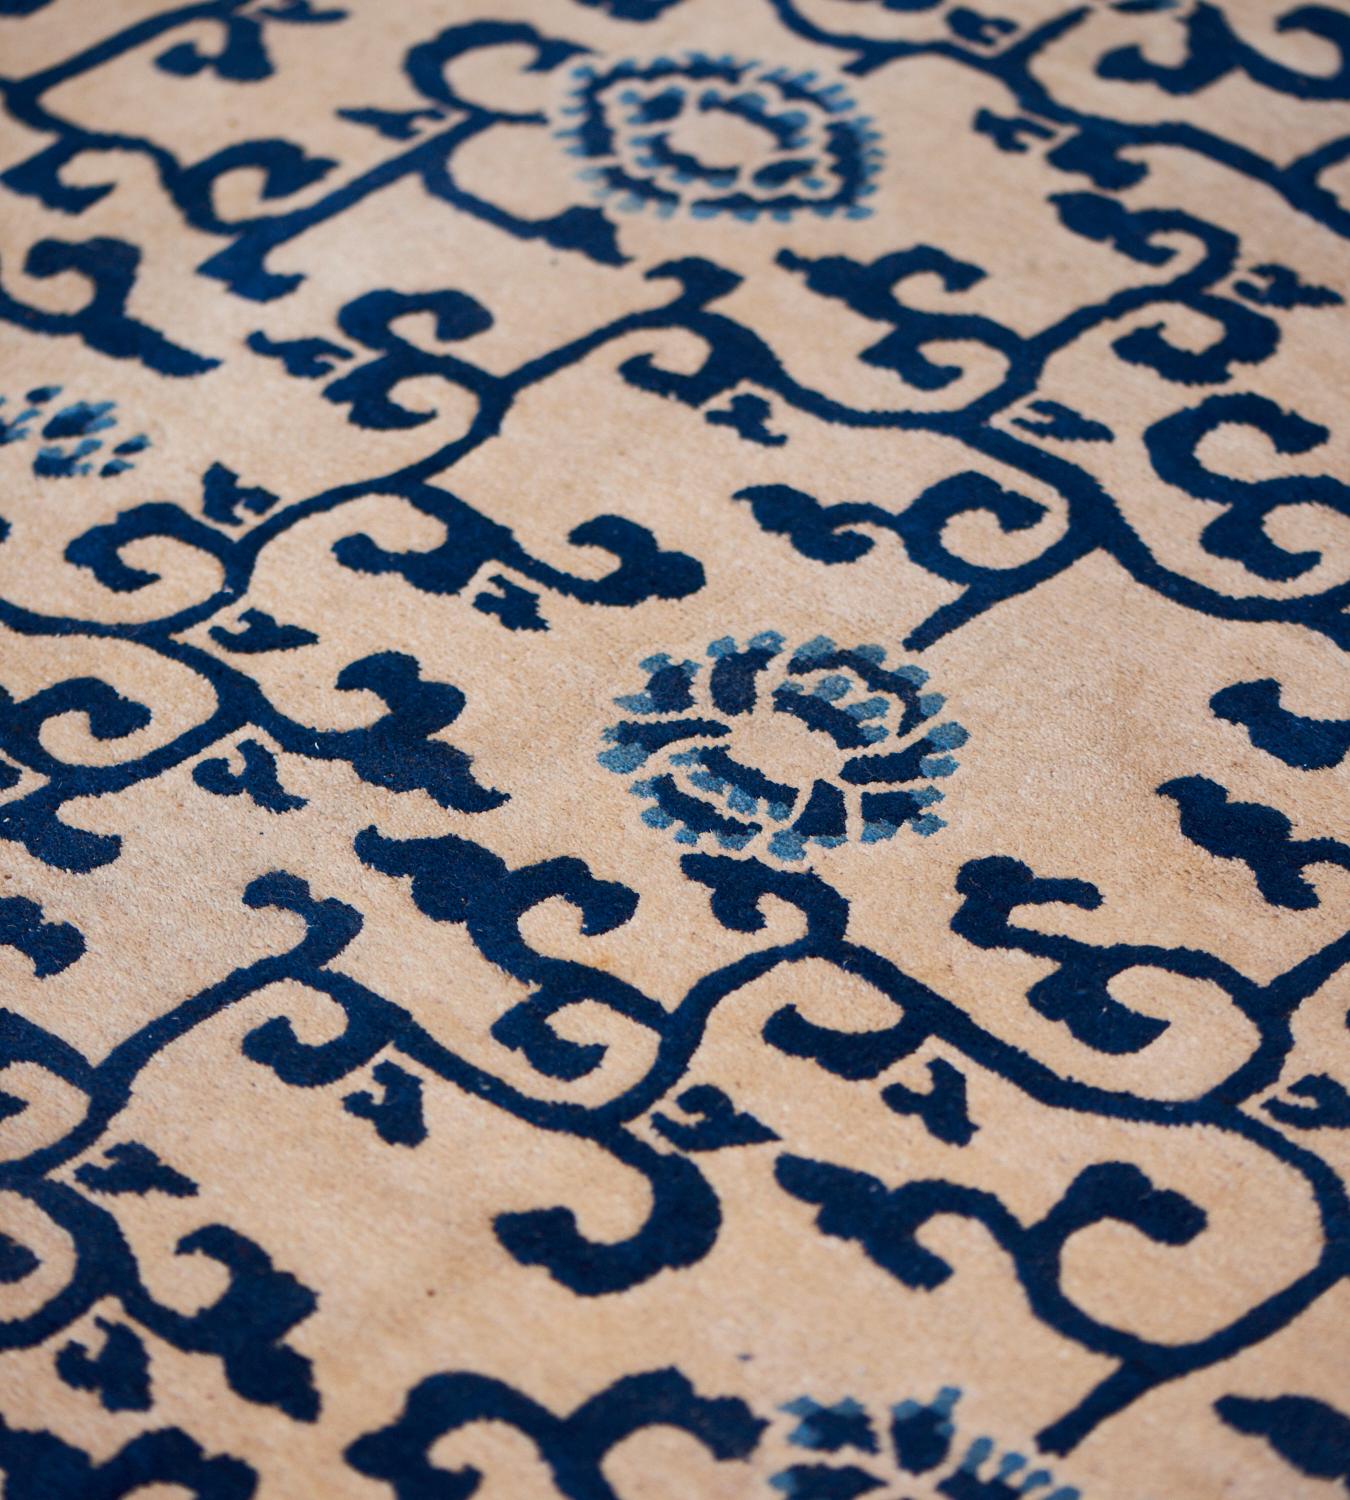 Cet ancien tapis chinois Ningxia du milieu du 19e siècle présente un champ ivoire avec un motif général de vigne à volutes angulaires bleu indigo et de têtes de fleurs bleu clair et bleu indigo, dans une bordure en treillis ivoire et bleu indigo,